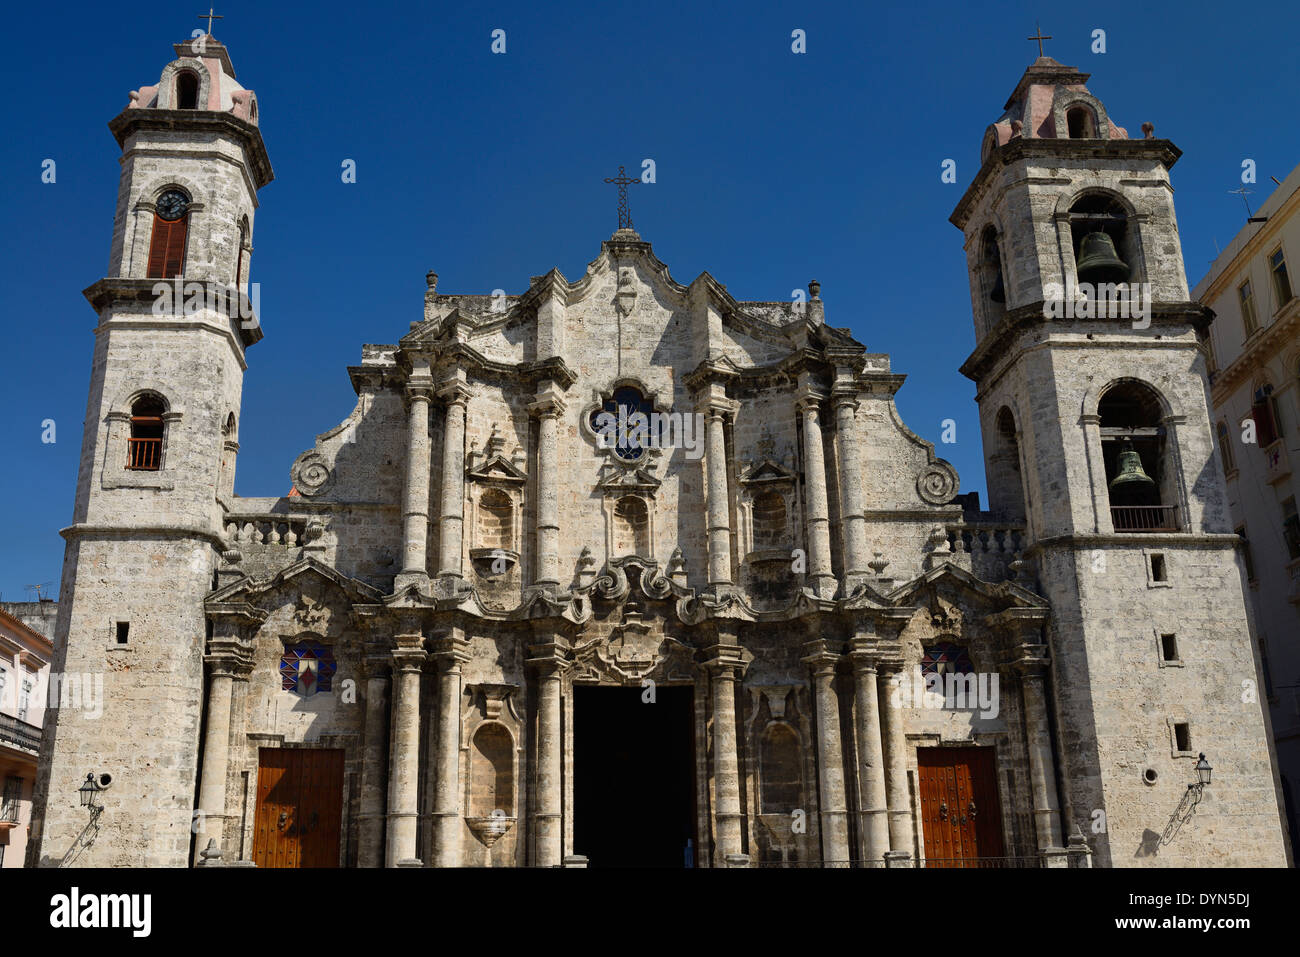 La Havane avant de la Vierge Marie de l'Immaculée Conception cathédrale catholique romaine avec horloge et clochers contre un ciel bleu Cuba Banque D'Images